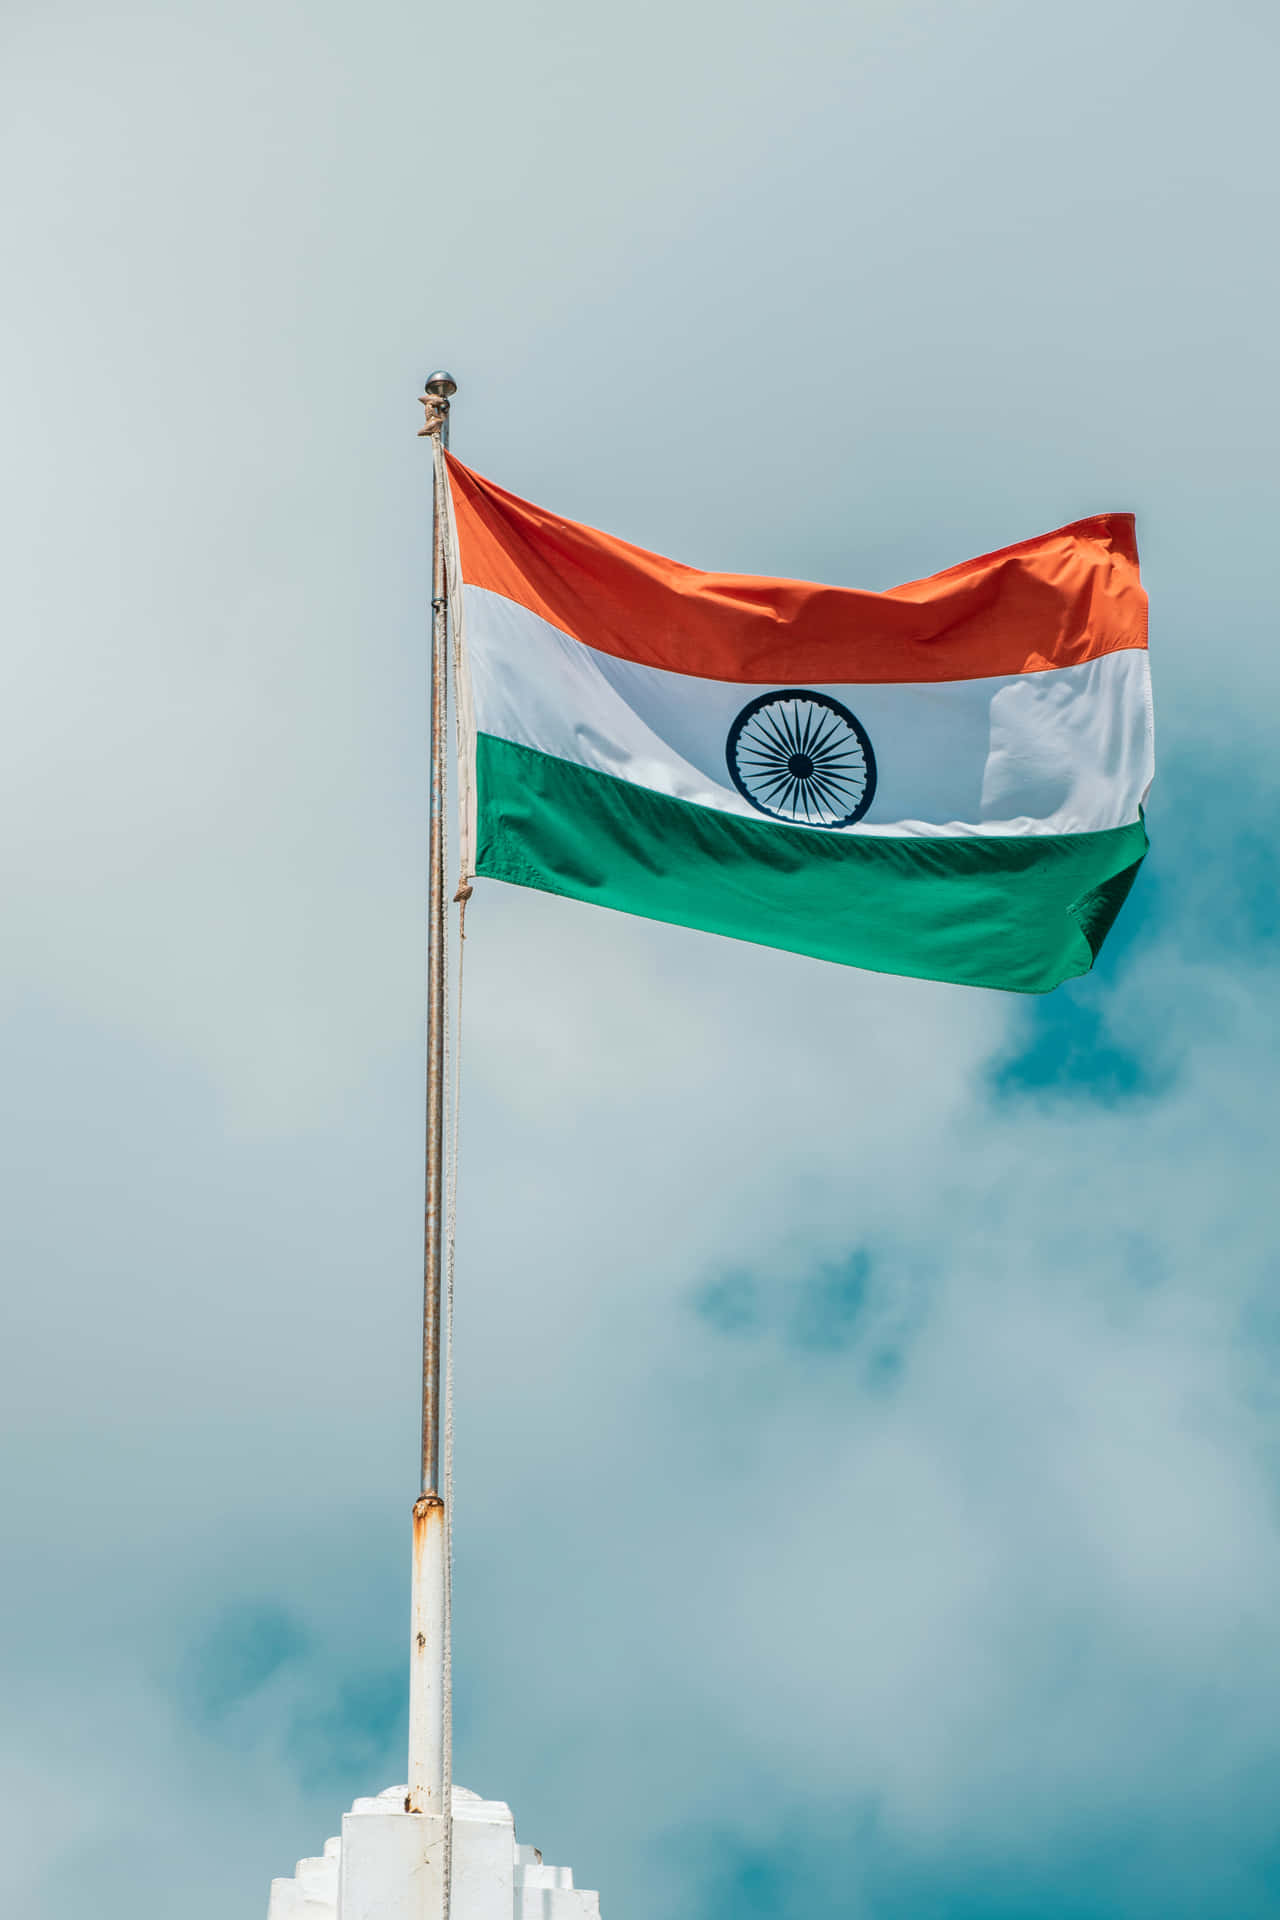 Celebrating India's National Flag